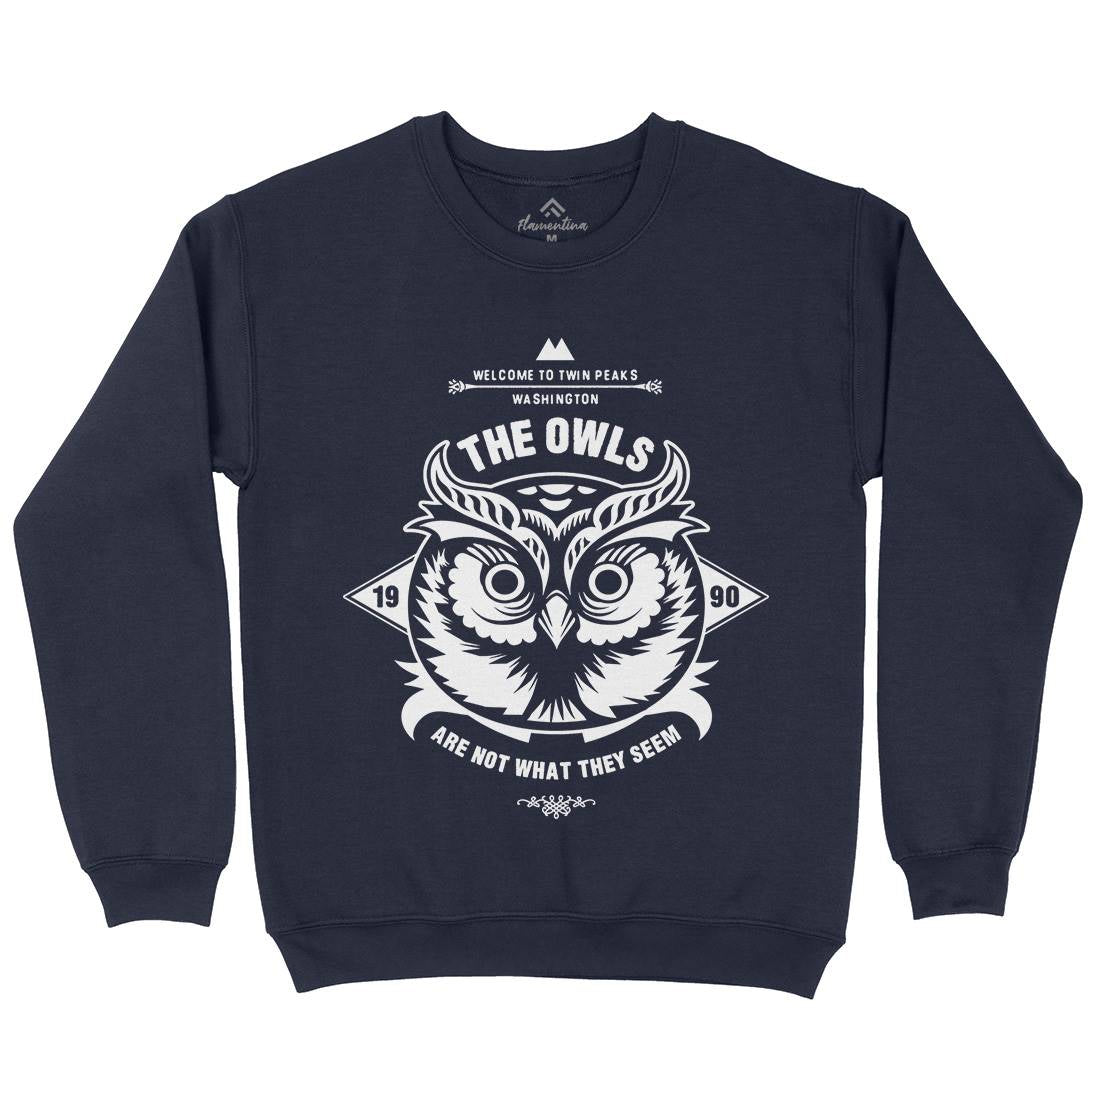 The Owls Kids Crew Neck Sweatshirt Animals D120